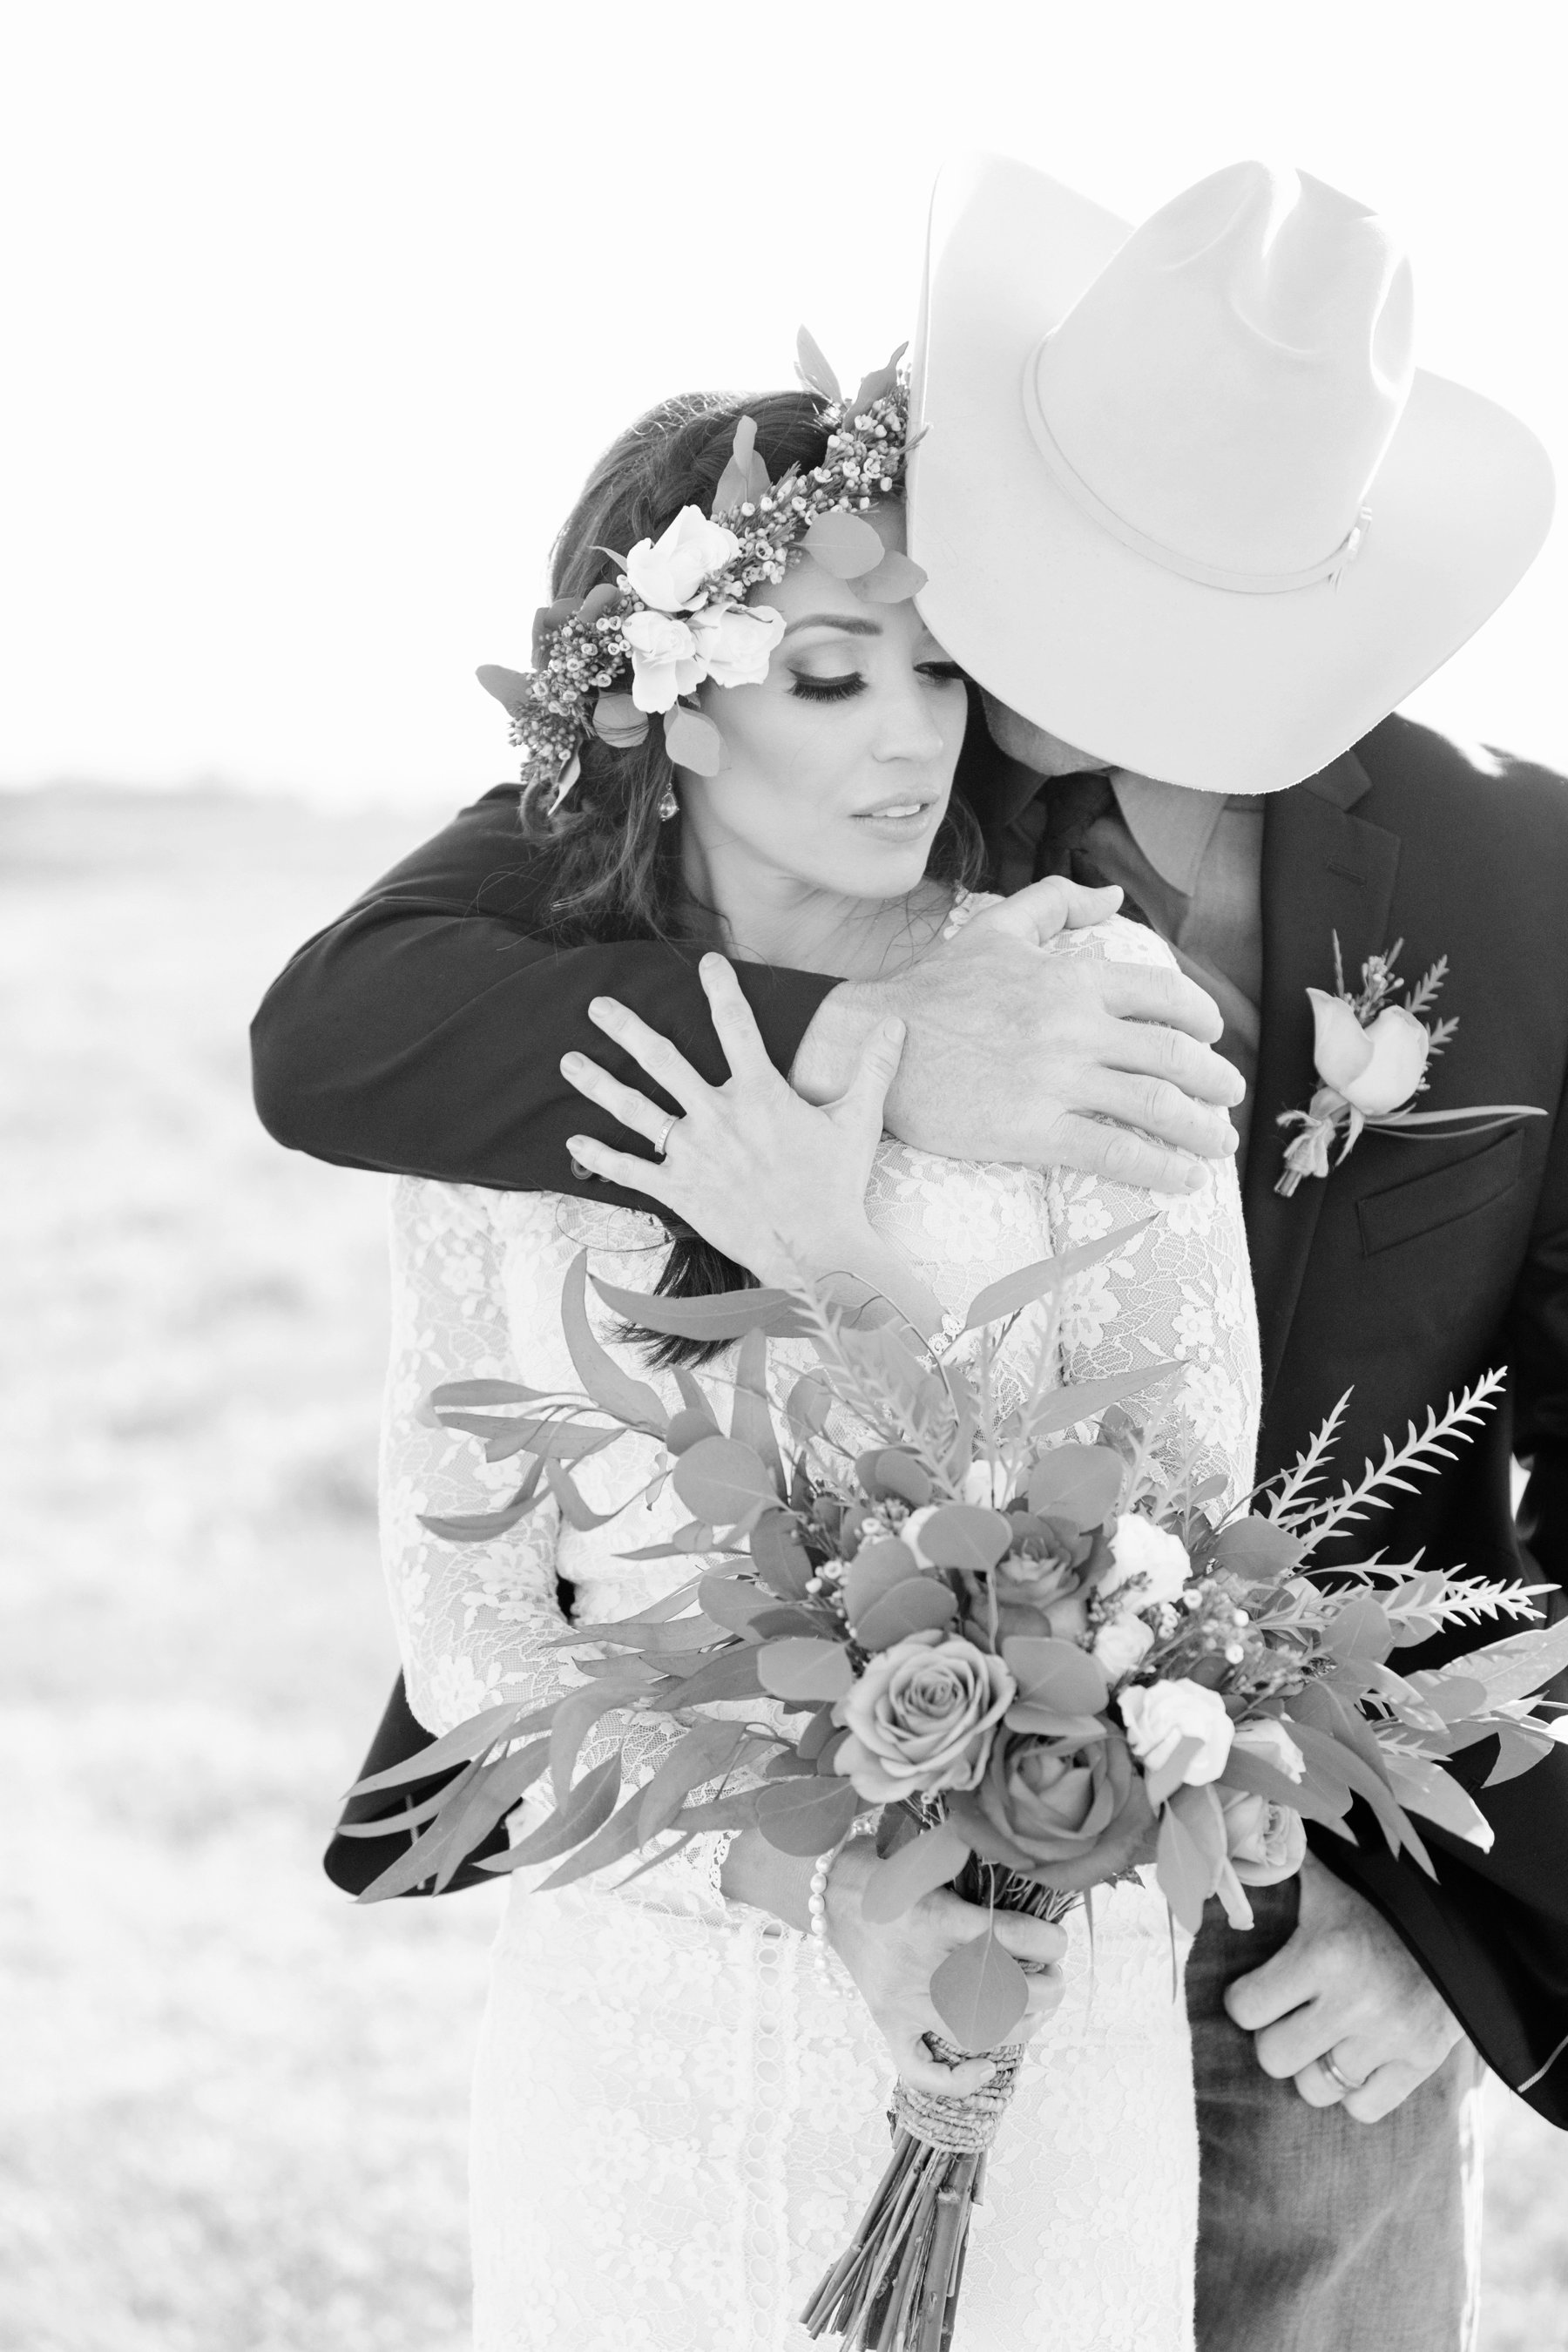 Cherokee / Oregon Gulch California // Cowboy wedding in northern california in open fields of flowers under an oak tree